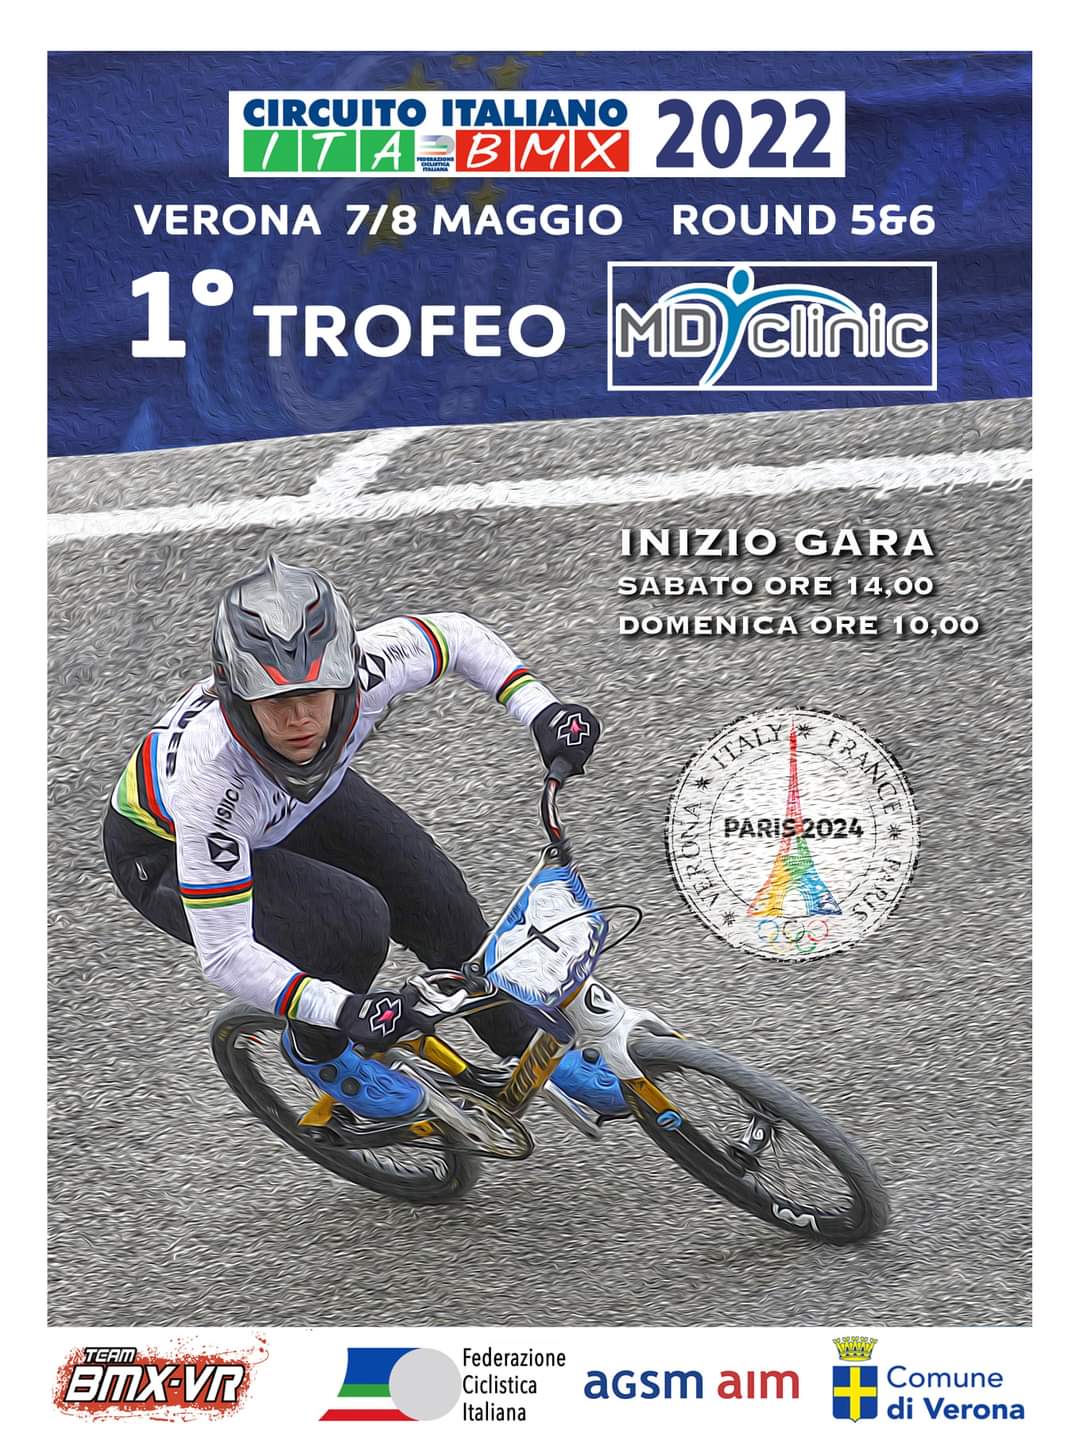 5&6 Prova Circuito Italiano Bmx Verona 7/8 Maggio 2022